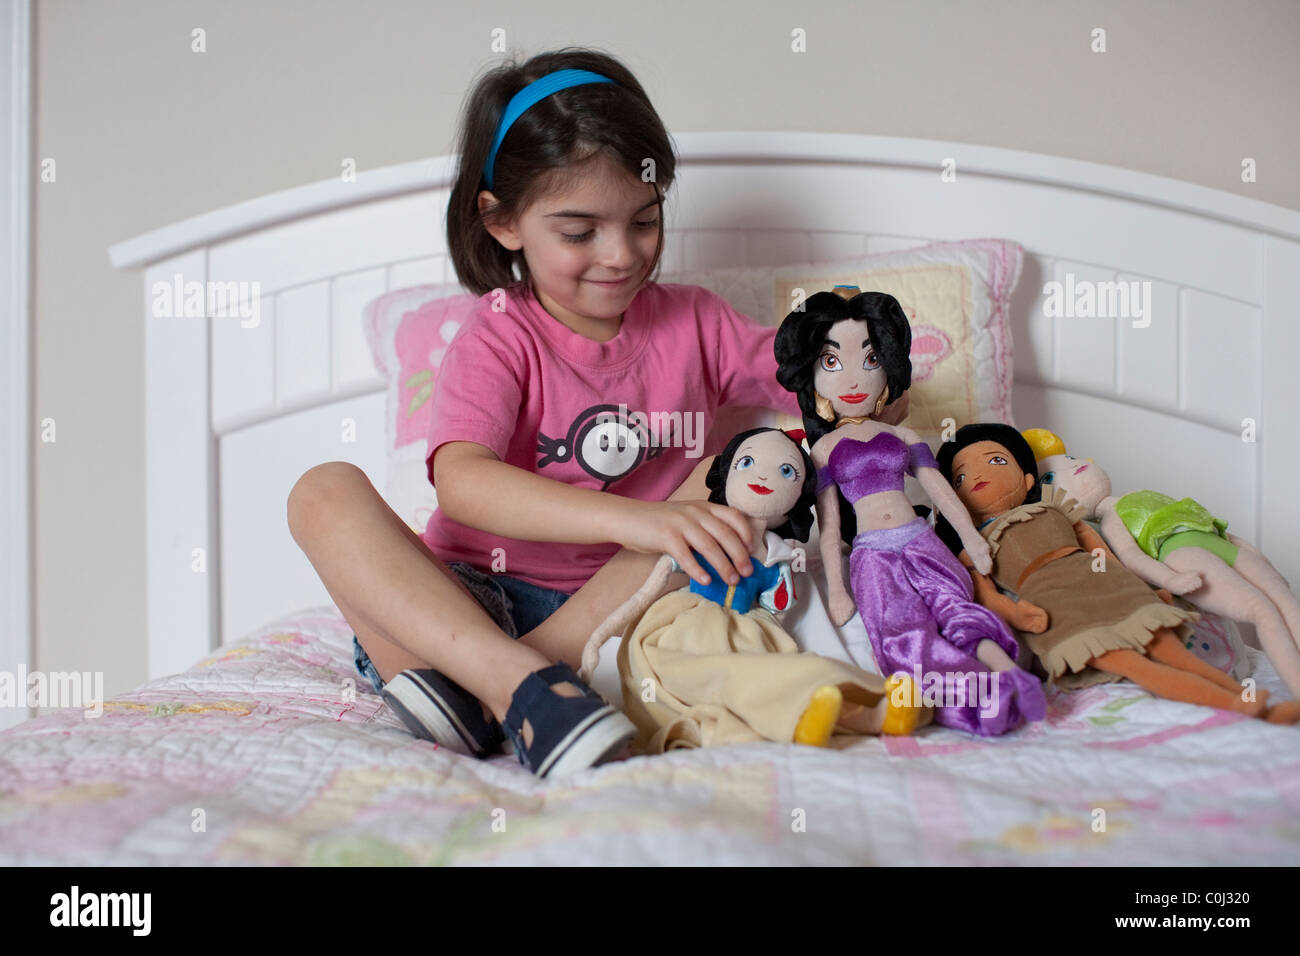 6-year-old girl mexico-joue avec ses poupées personnages de Disney Blanche Neige, la princesse Jasmine, Pocahontas, Tinker Bell Banque D'Images